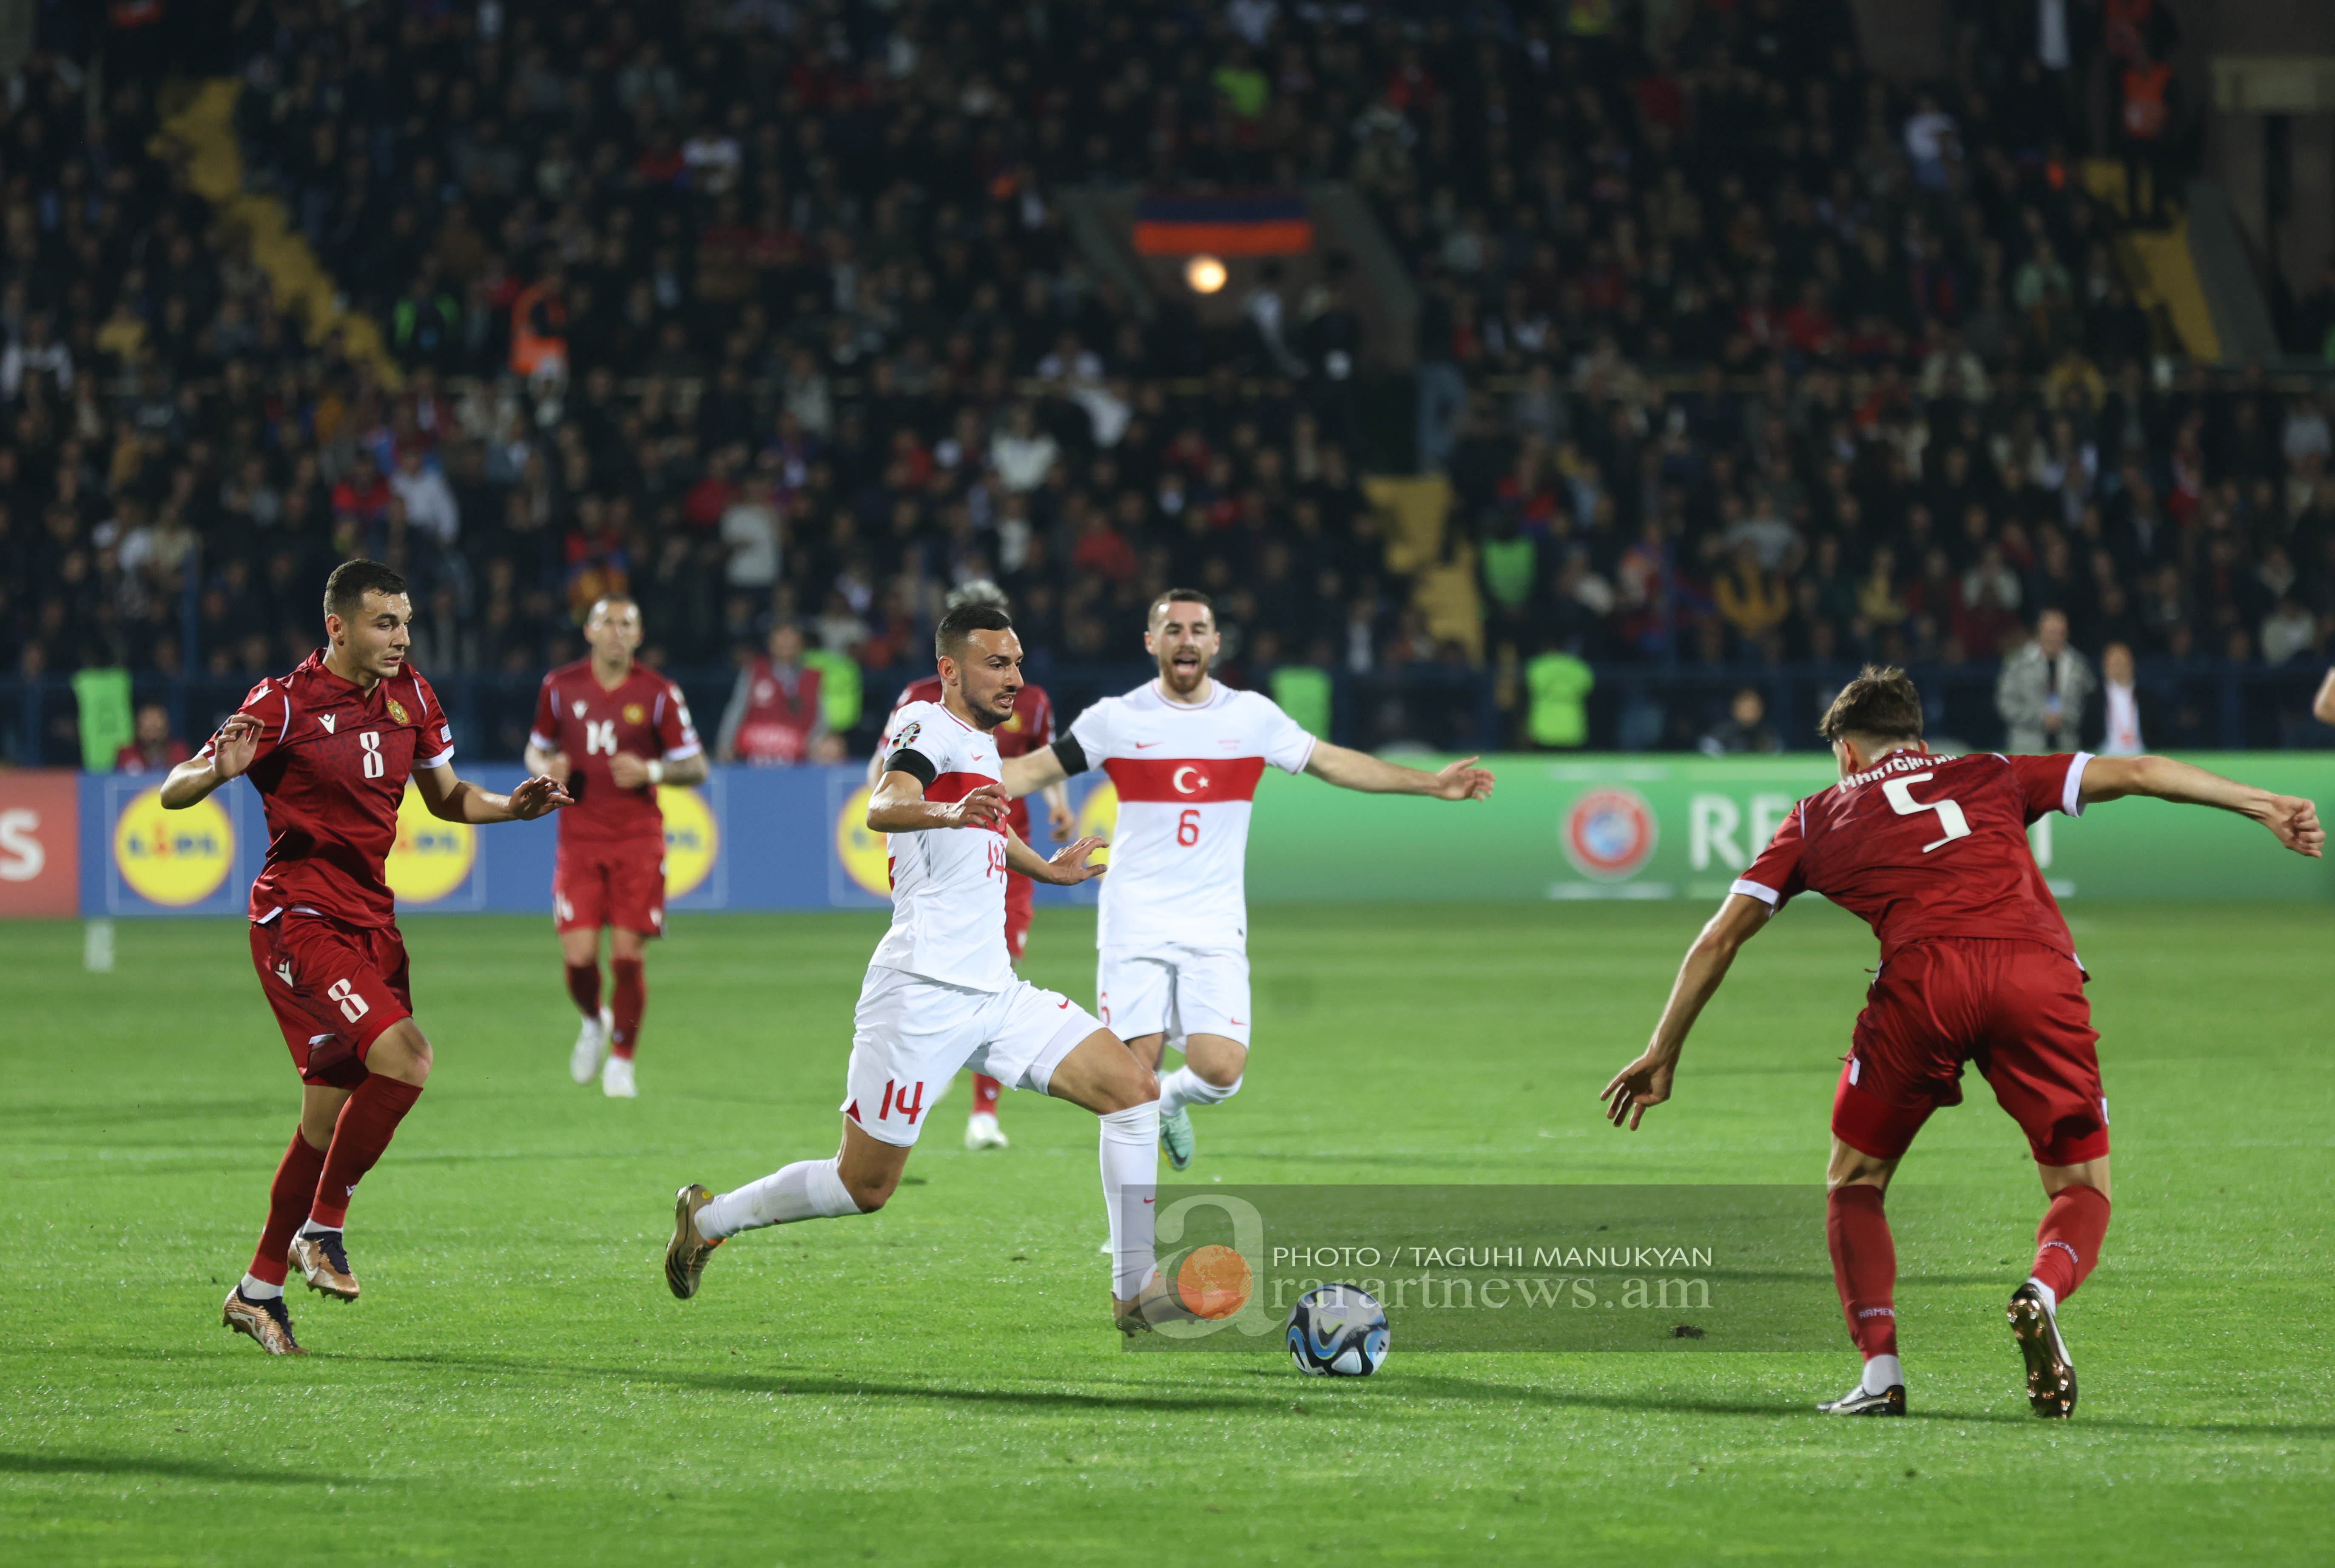 Հայաստան-Թուրքիա ֆուտբոլային հանդիպումը լուսանկարներով